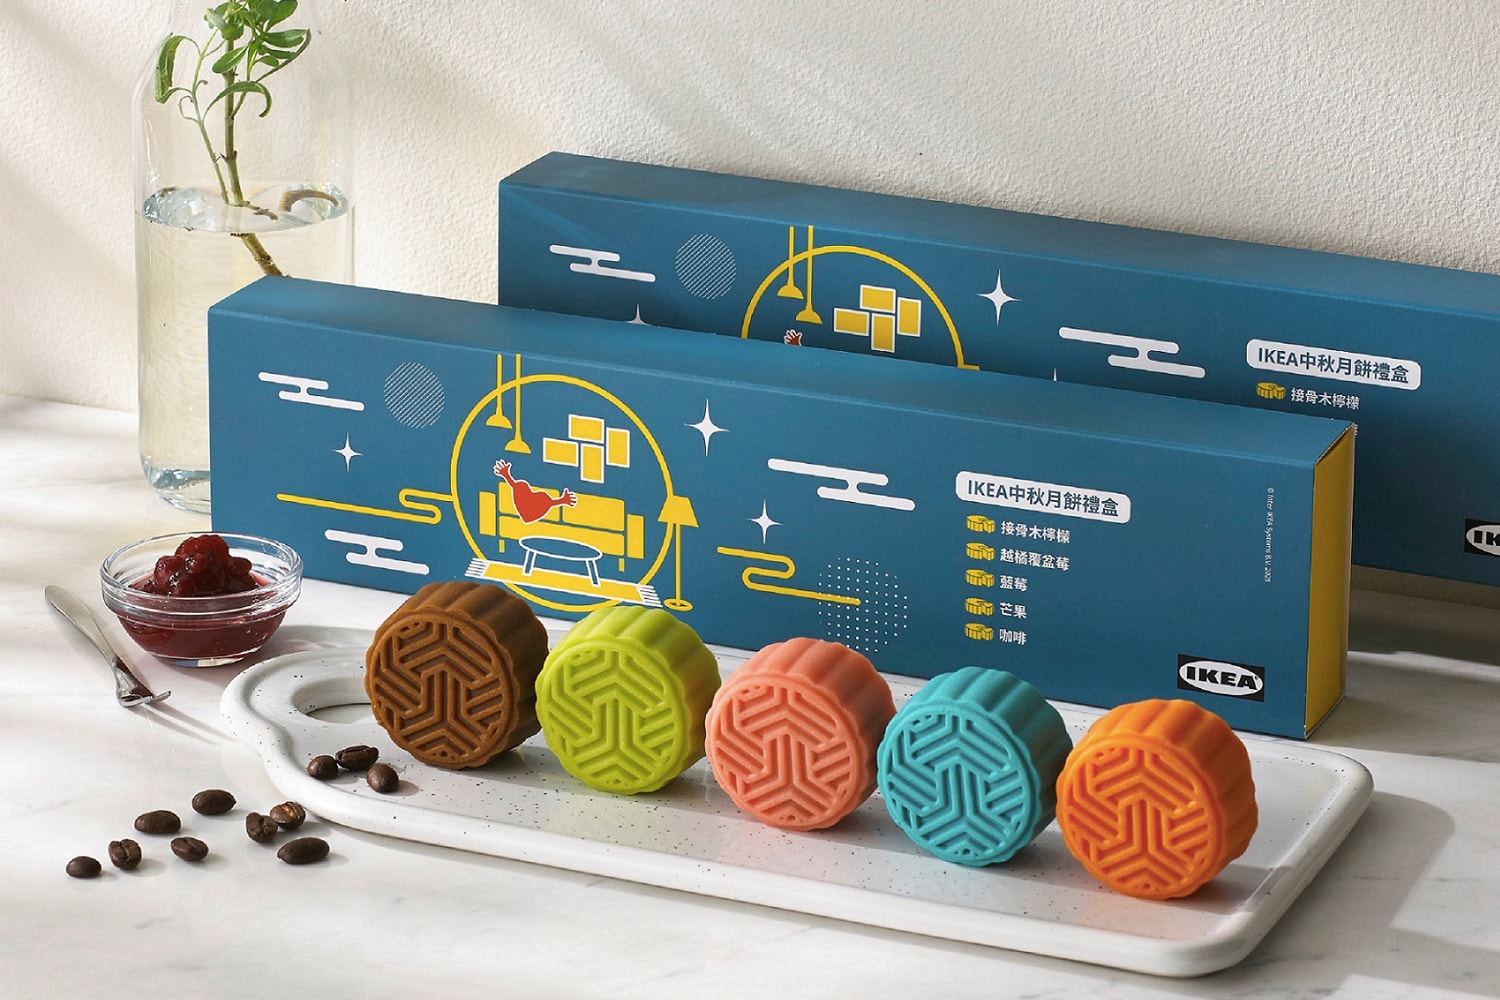 IKEA 正式推出「瑞典風味中秋月餅禮盒」及「哈密瓜霜淇淋」優惠活動